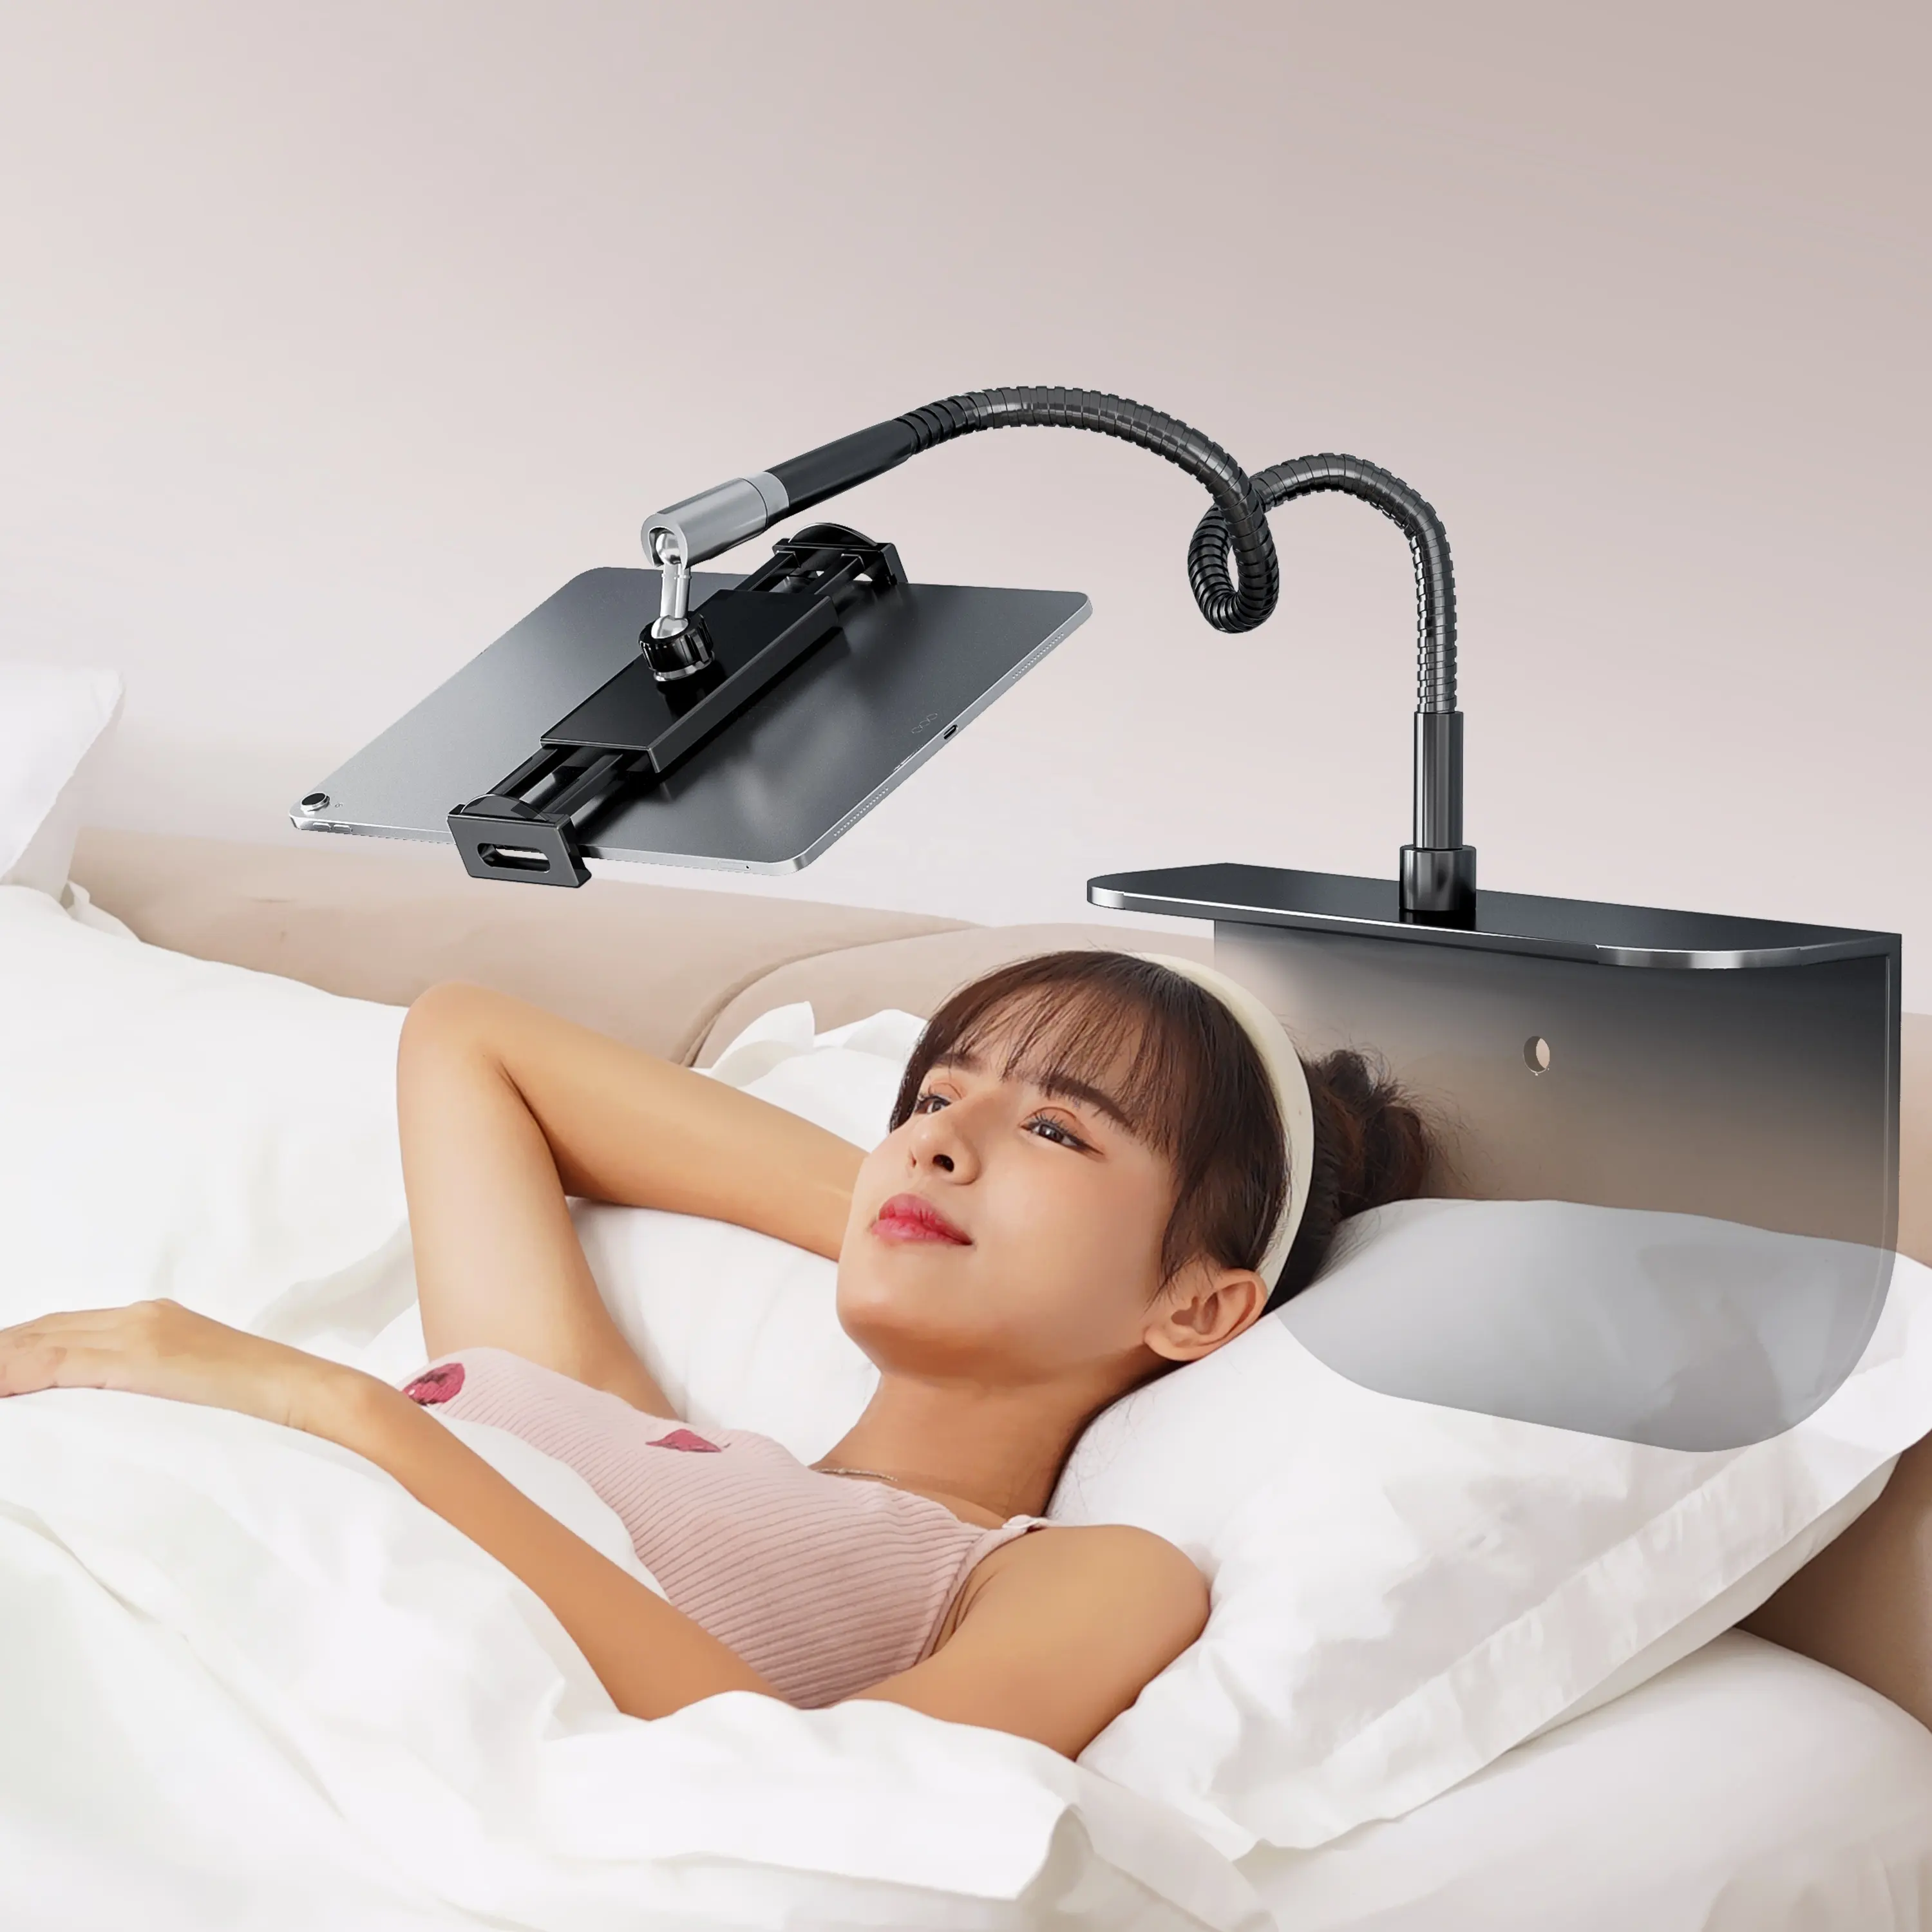 नए गोसेनेक लचीले हथियार छिपे हुए बिस्तर वाले आलसी मोबाइल फोन टैबलेट धारक सार्वभौमिक डेस्कटॉप समायोज्य टैबलेट पीसी स्टैंड